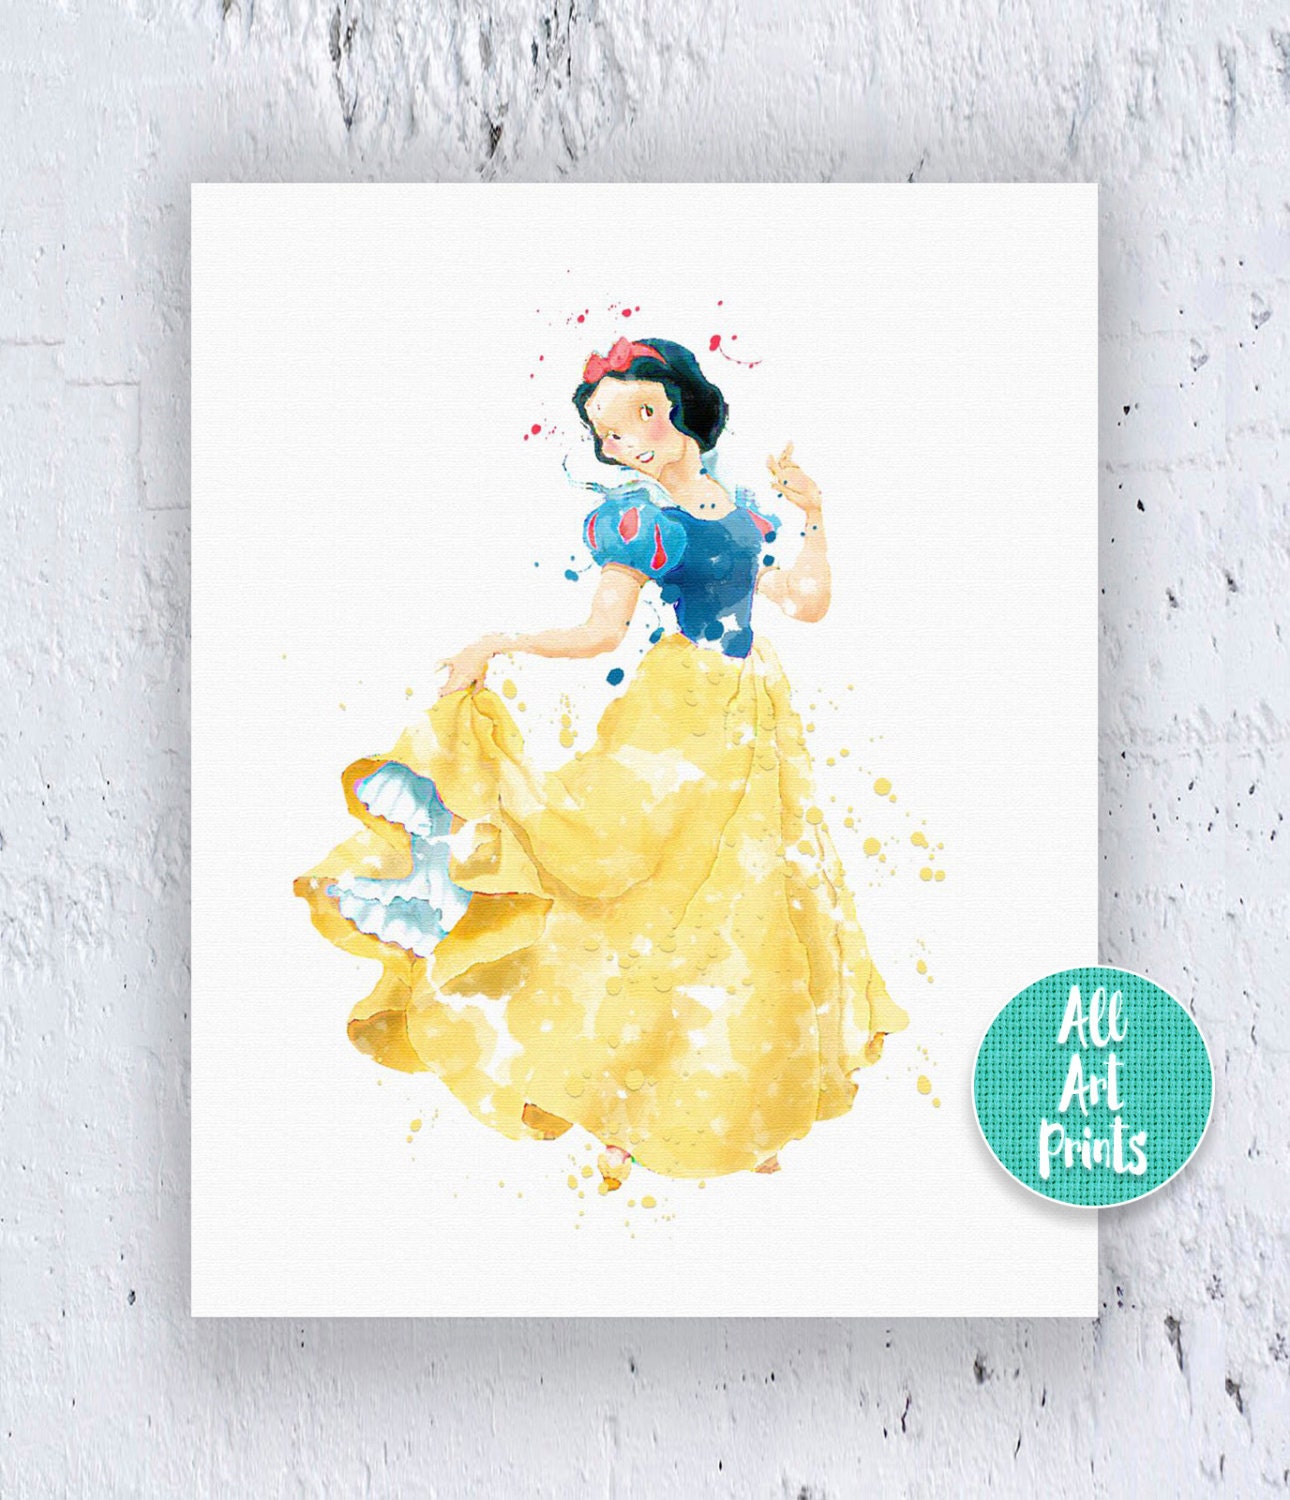 Snow White Disney Princess Print Watercolor By Allartprints 